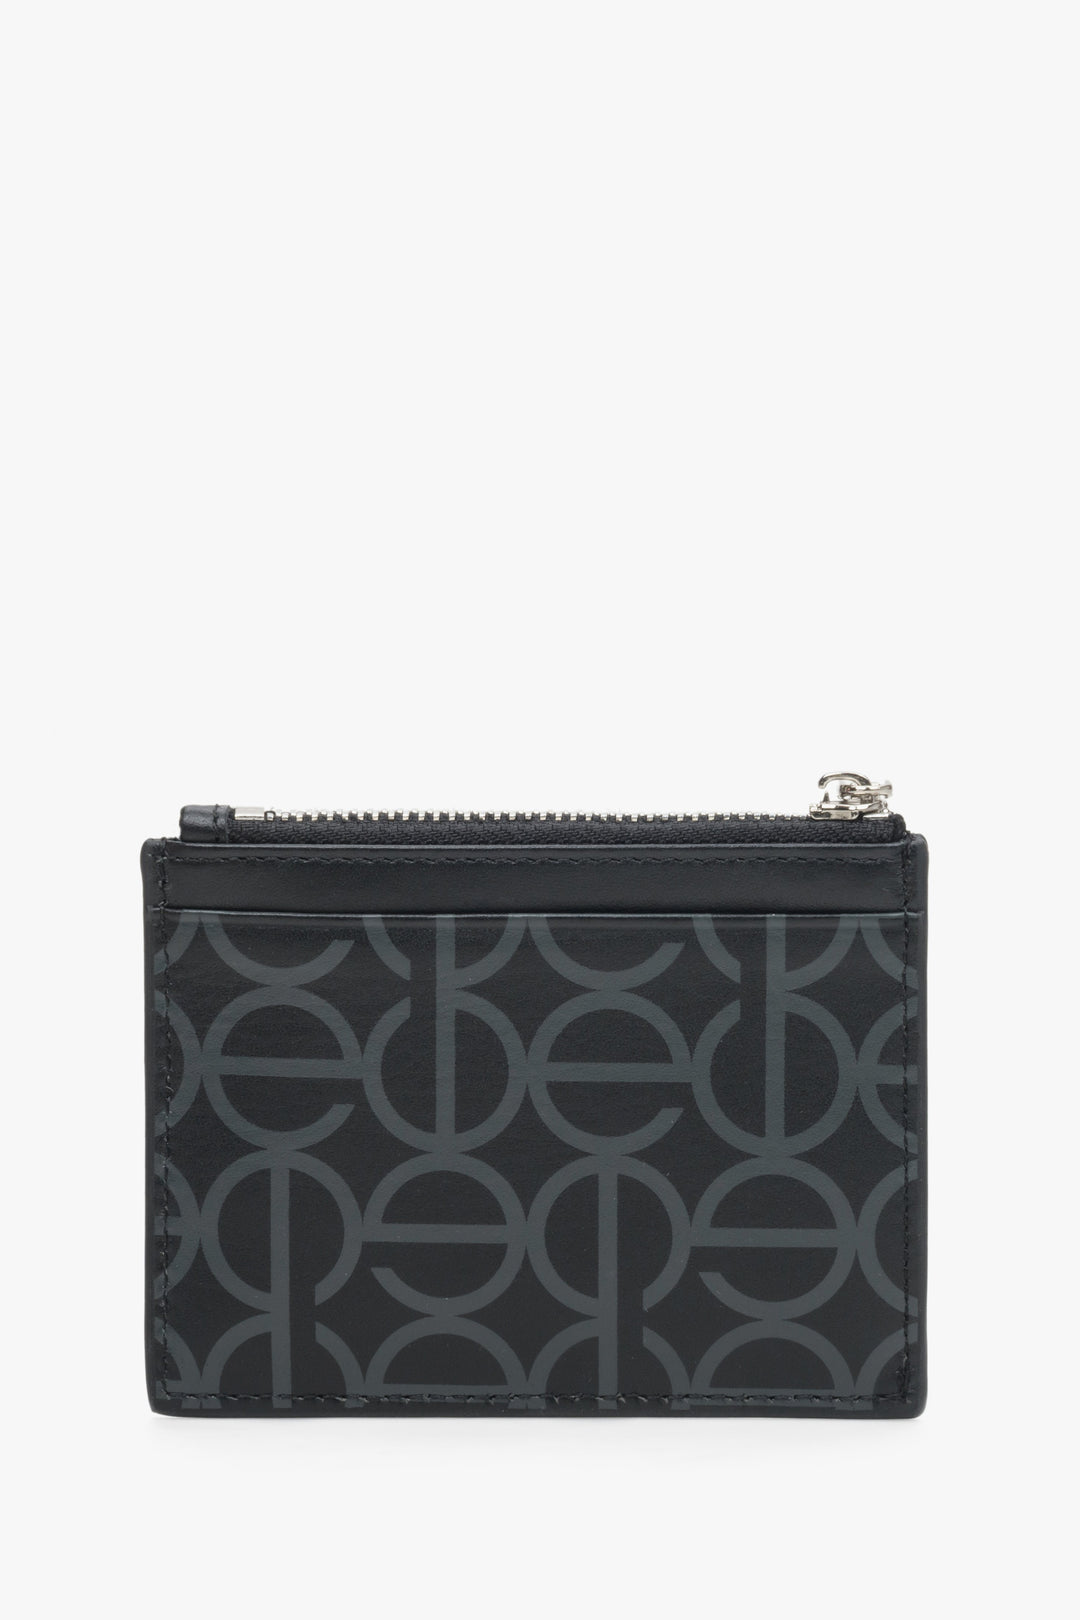 Mały, poręczny portfel damski Estro w kolorze czarnym - rewers.